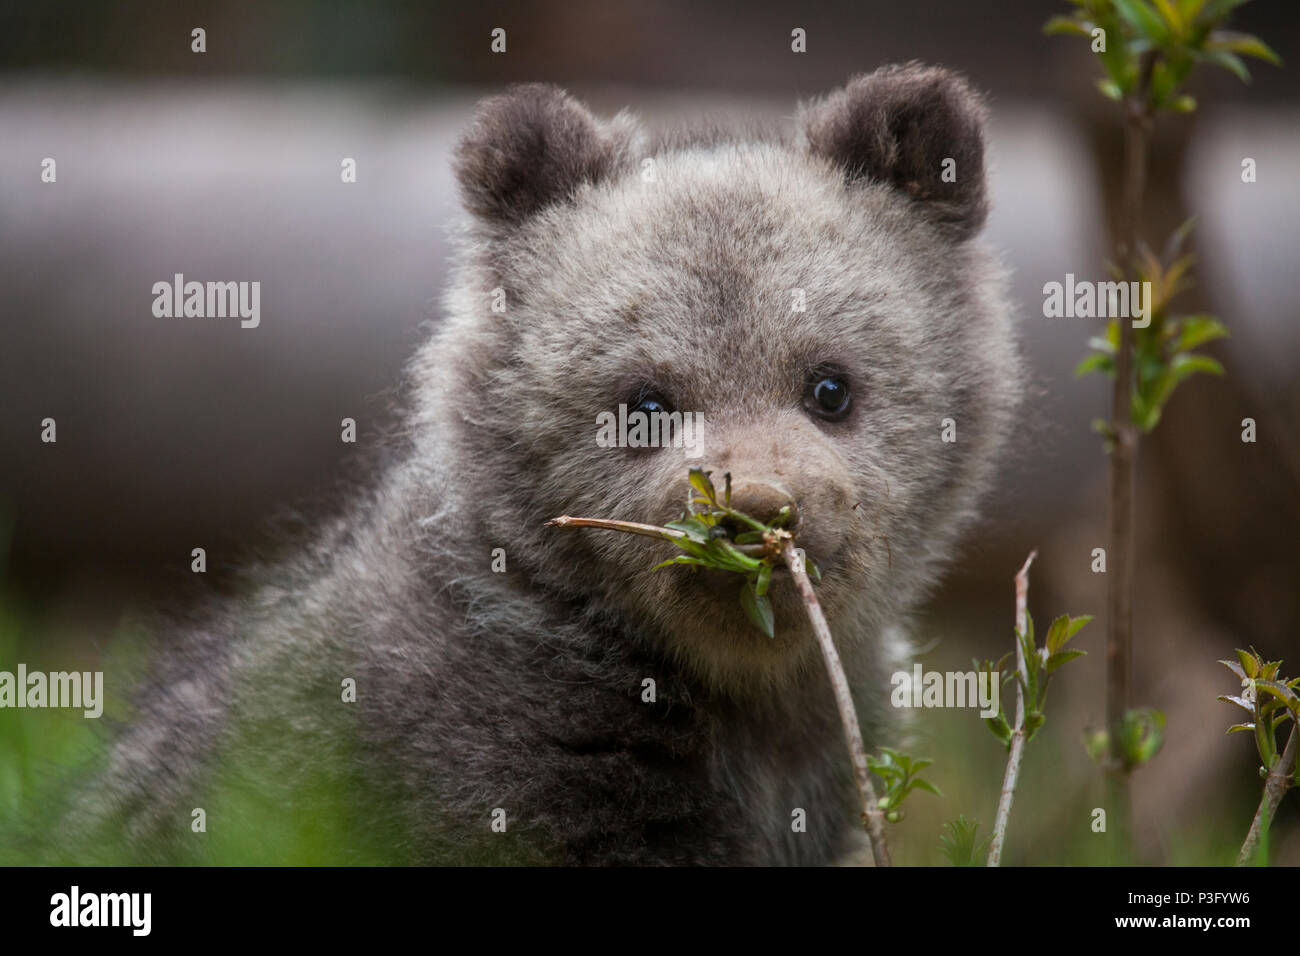 Adorable niedlichen Baby Bear Cub riechende Pflanzen, die mit schmutzigen Nase Stockfoto